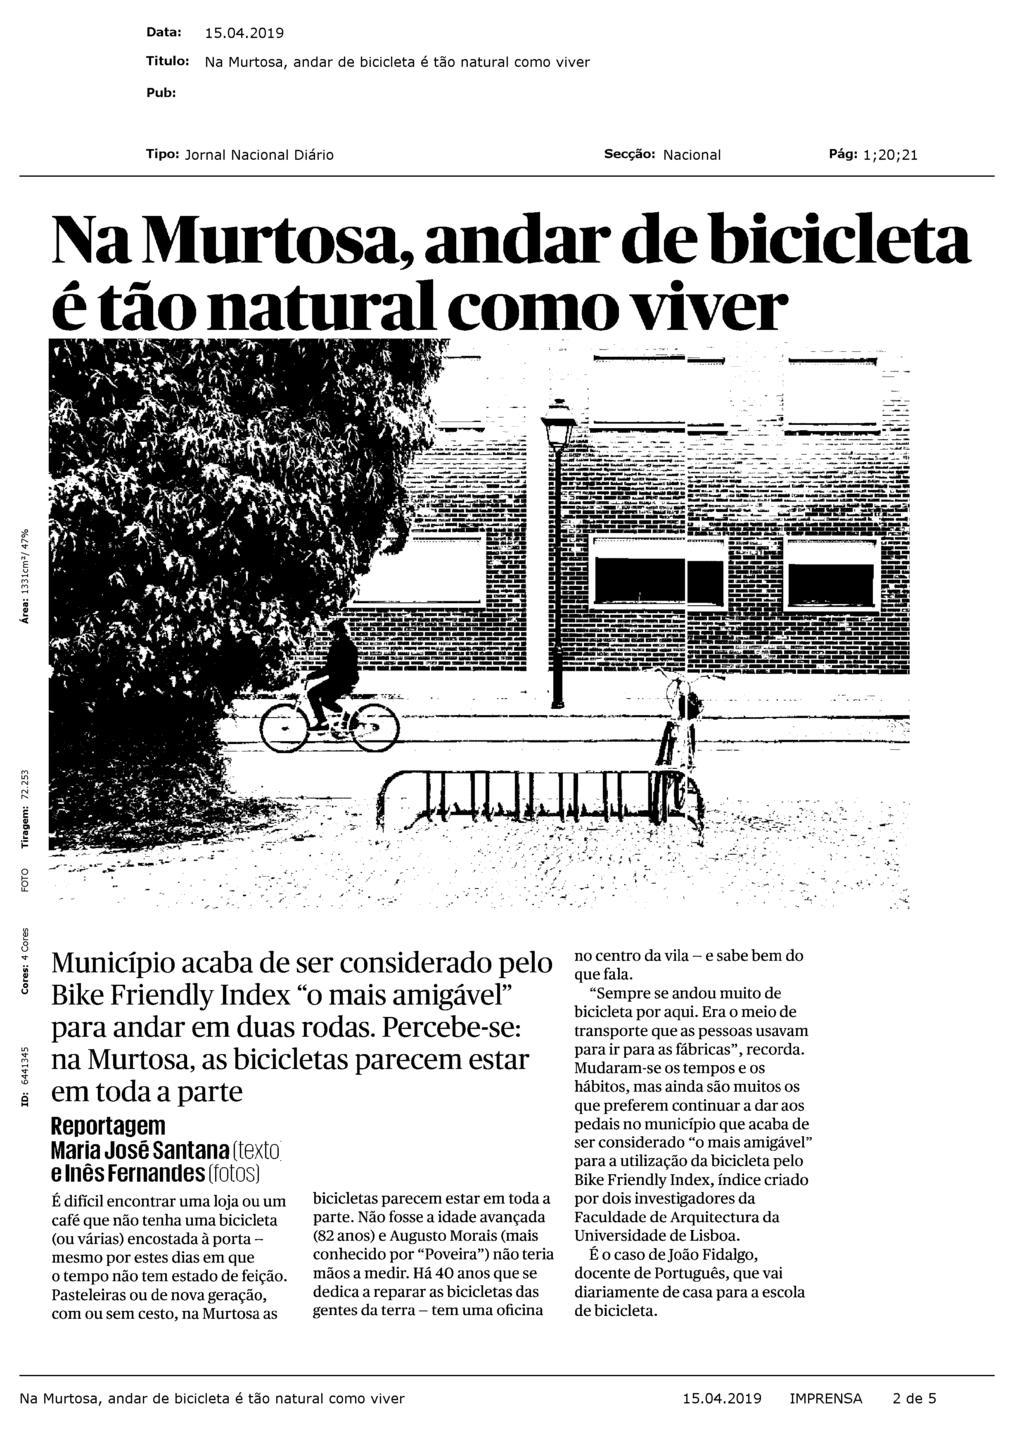 Na Murtosa, andar de bicicleta é tão natural como viver Município acaba de ser considerado pelo Bike Friendly Index "o mais amigável" para andar em duas rodas.